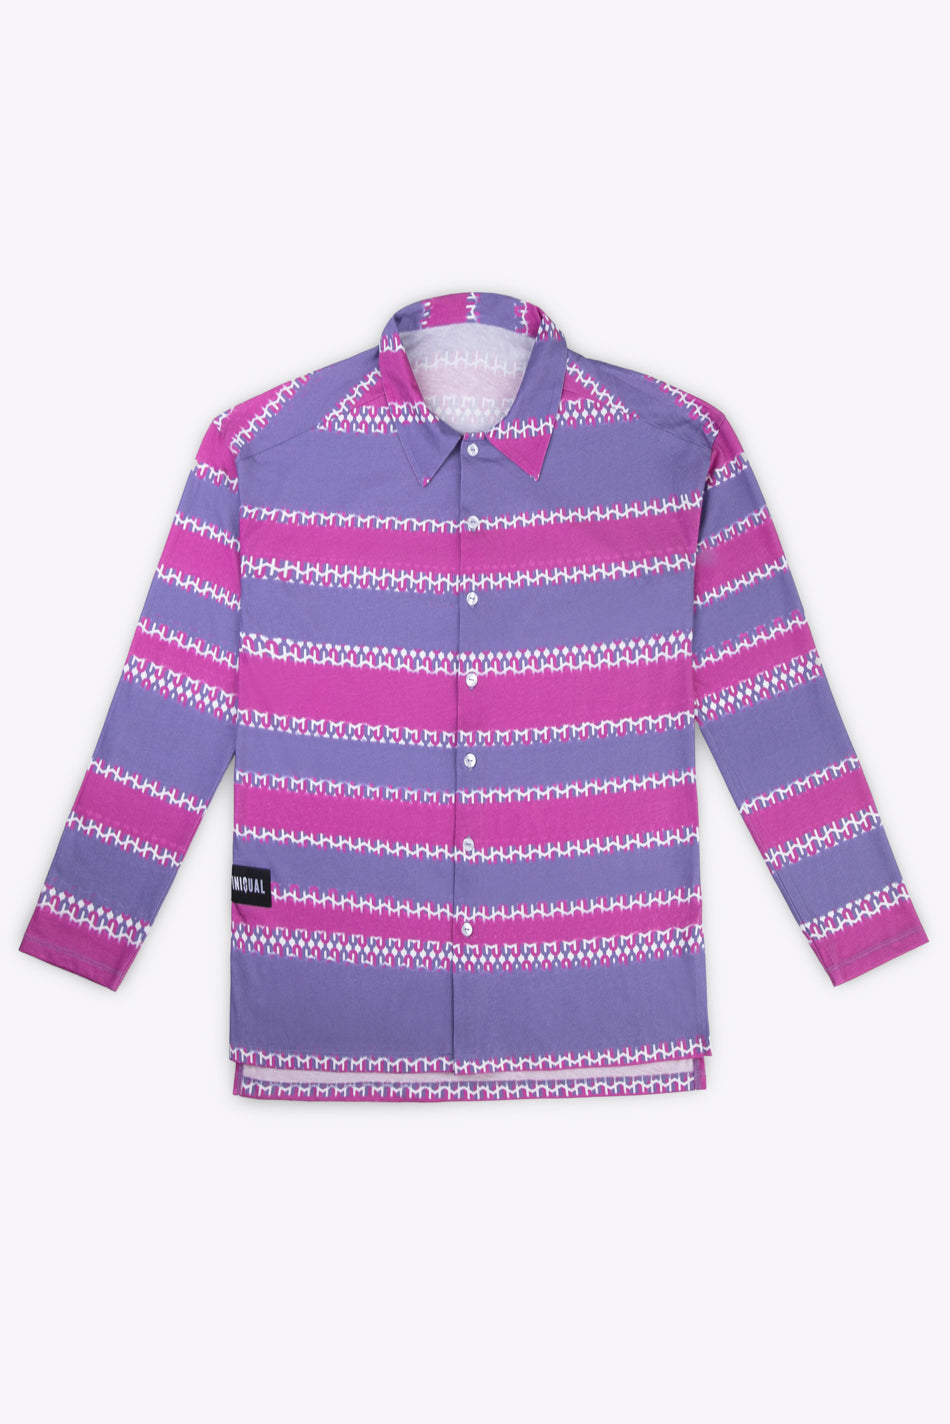 Camisa unisex de algodón rosa y azul estampada